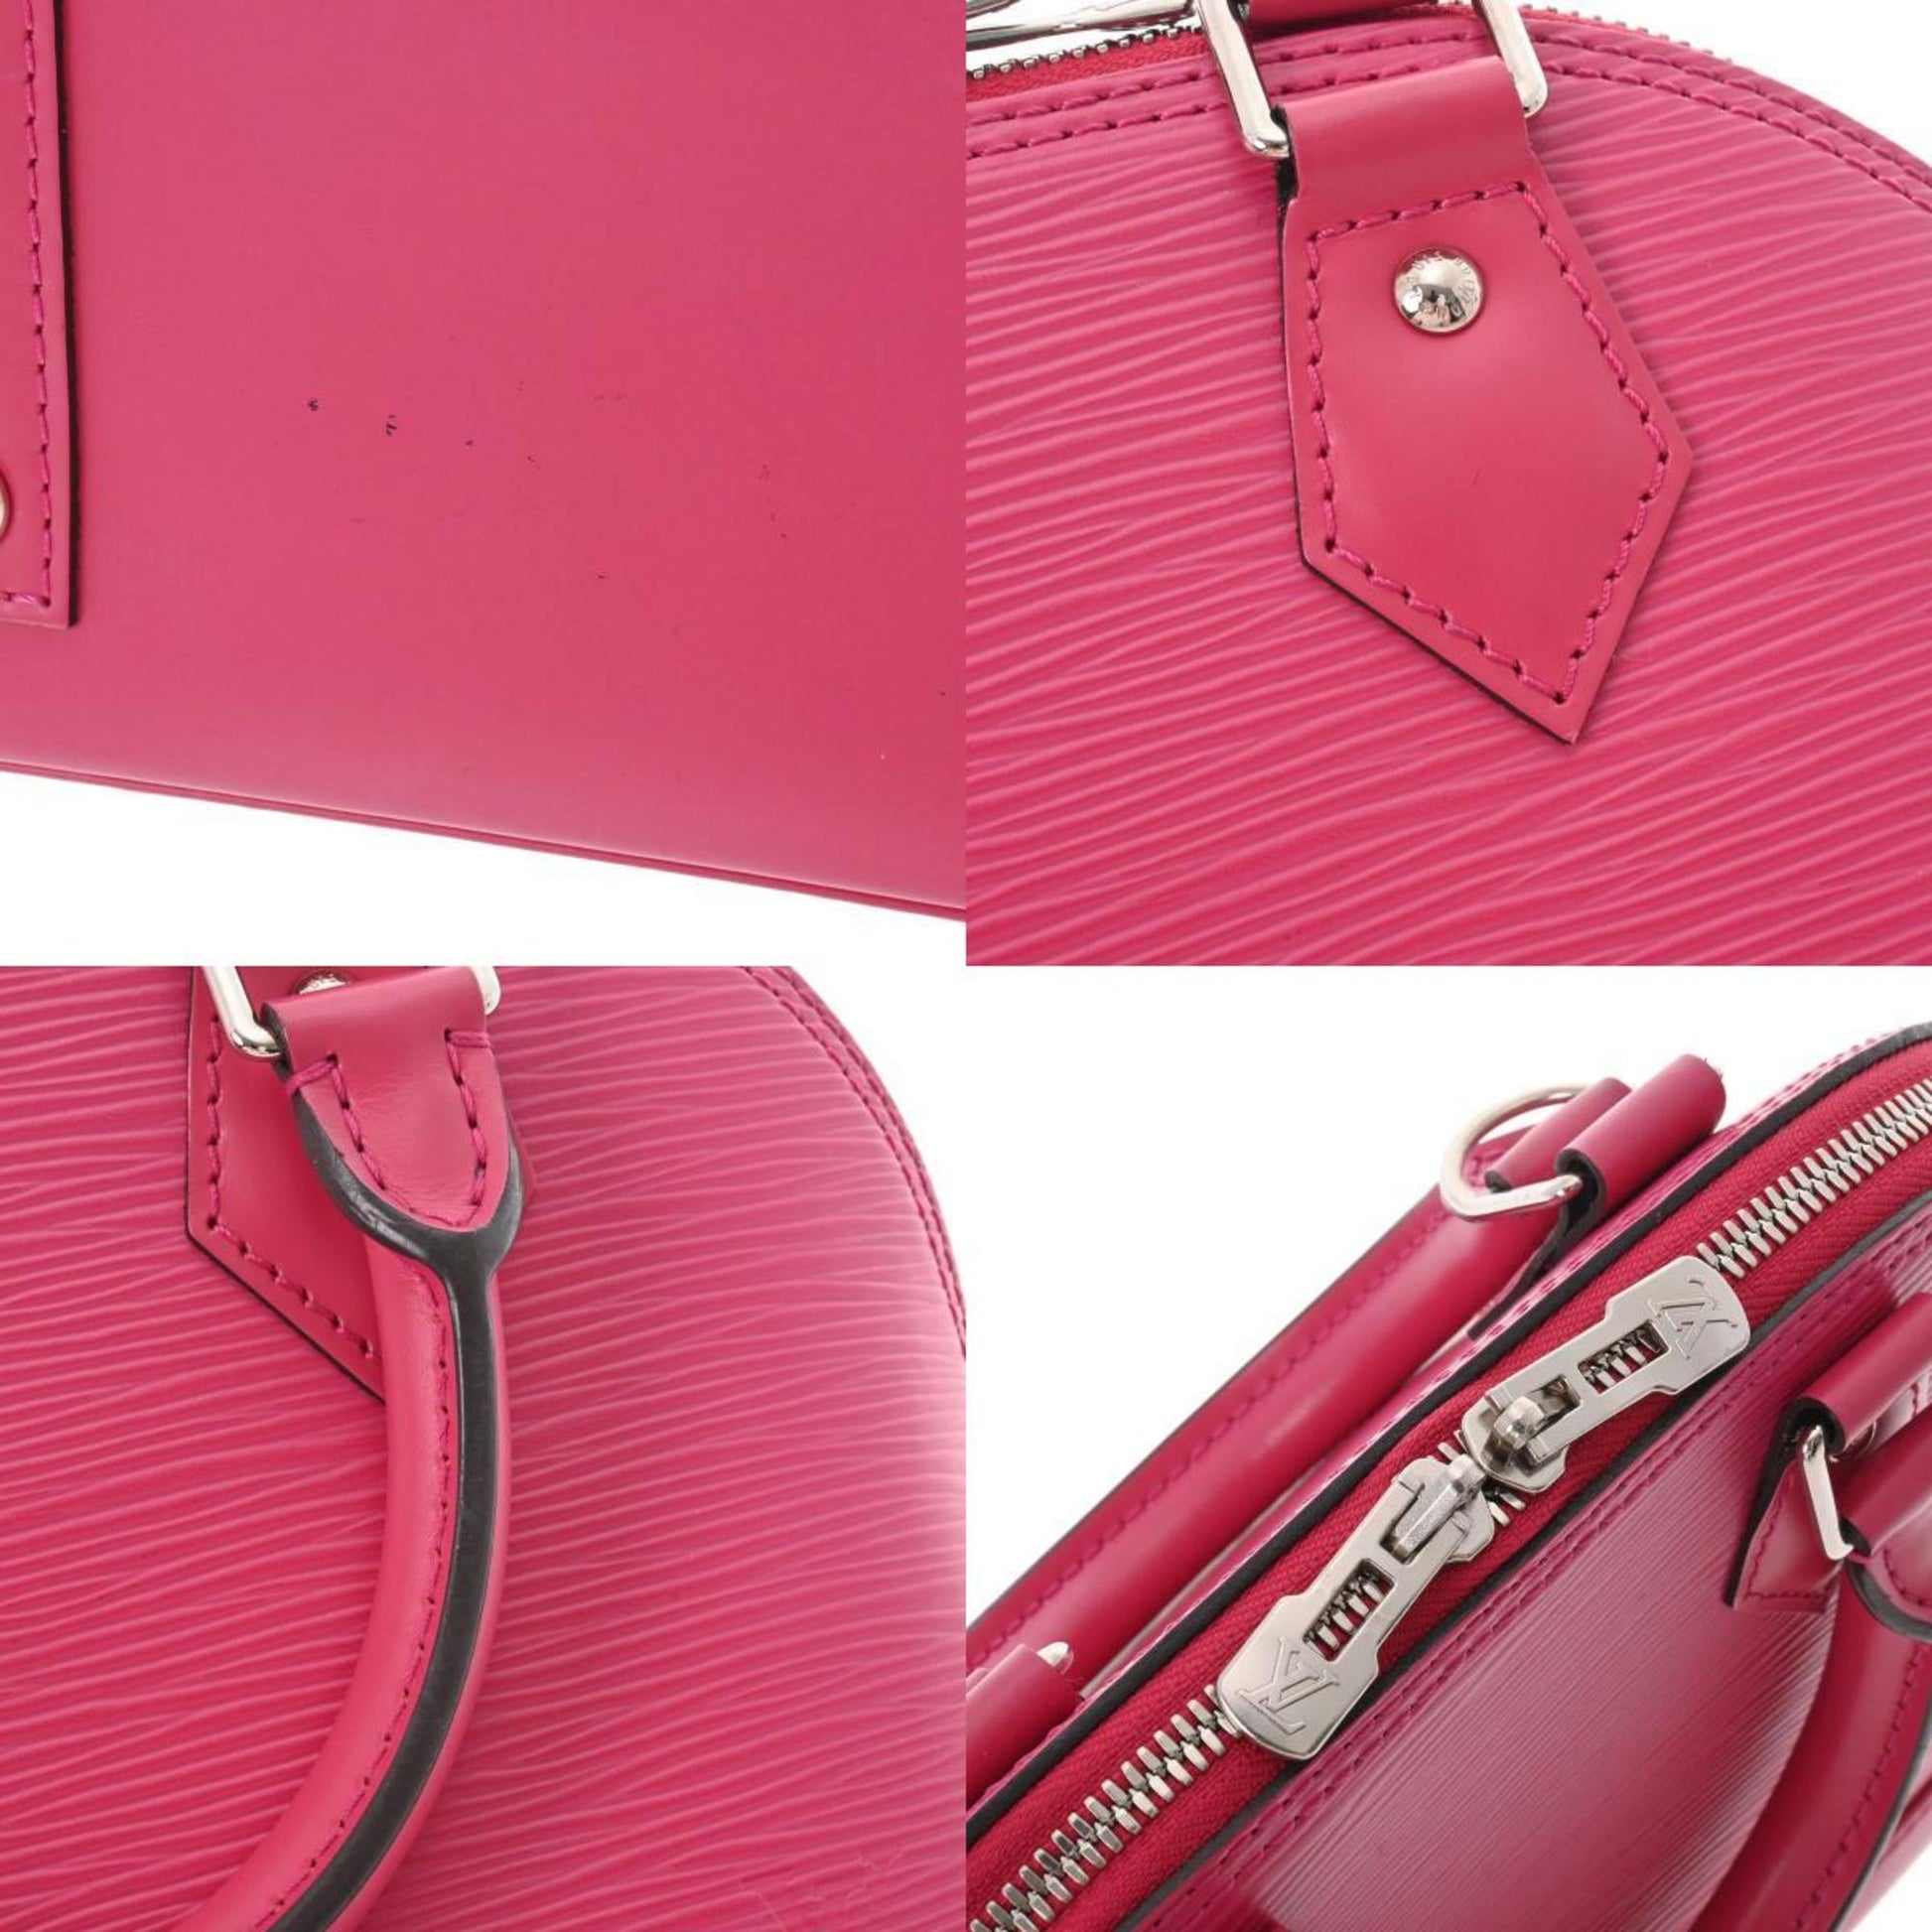 LOUIS VUITTON Louis Vuitton Epi Alma BB Hot Pink M42048 Women's